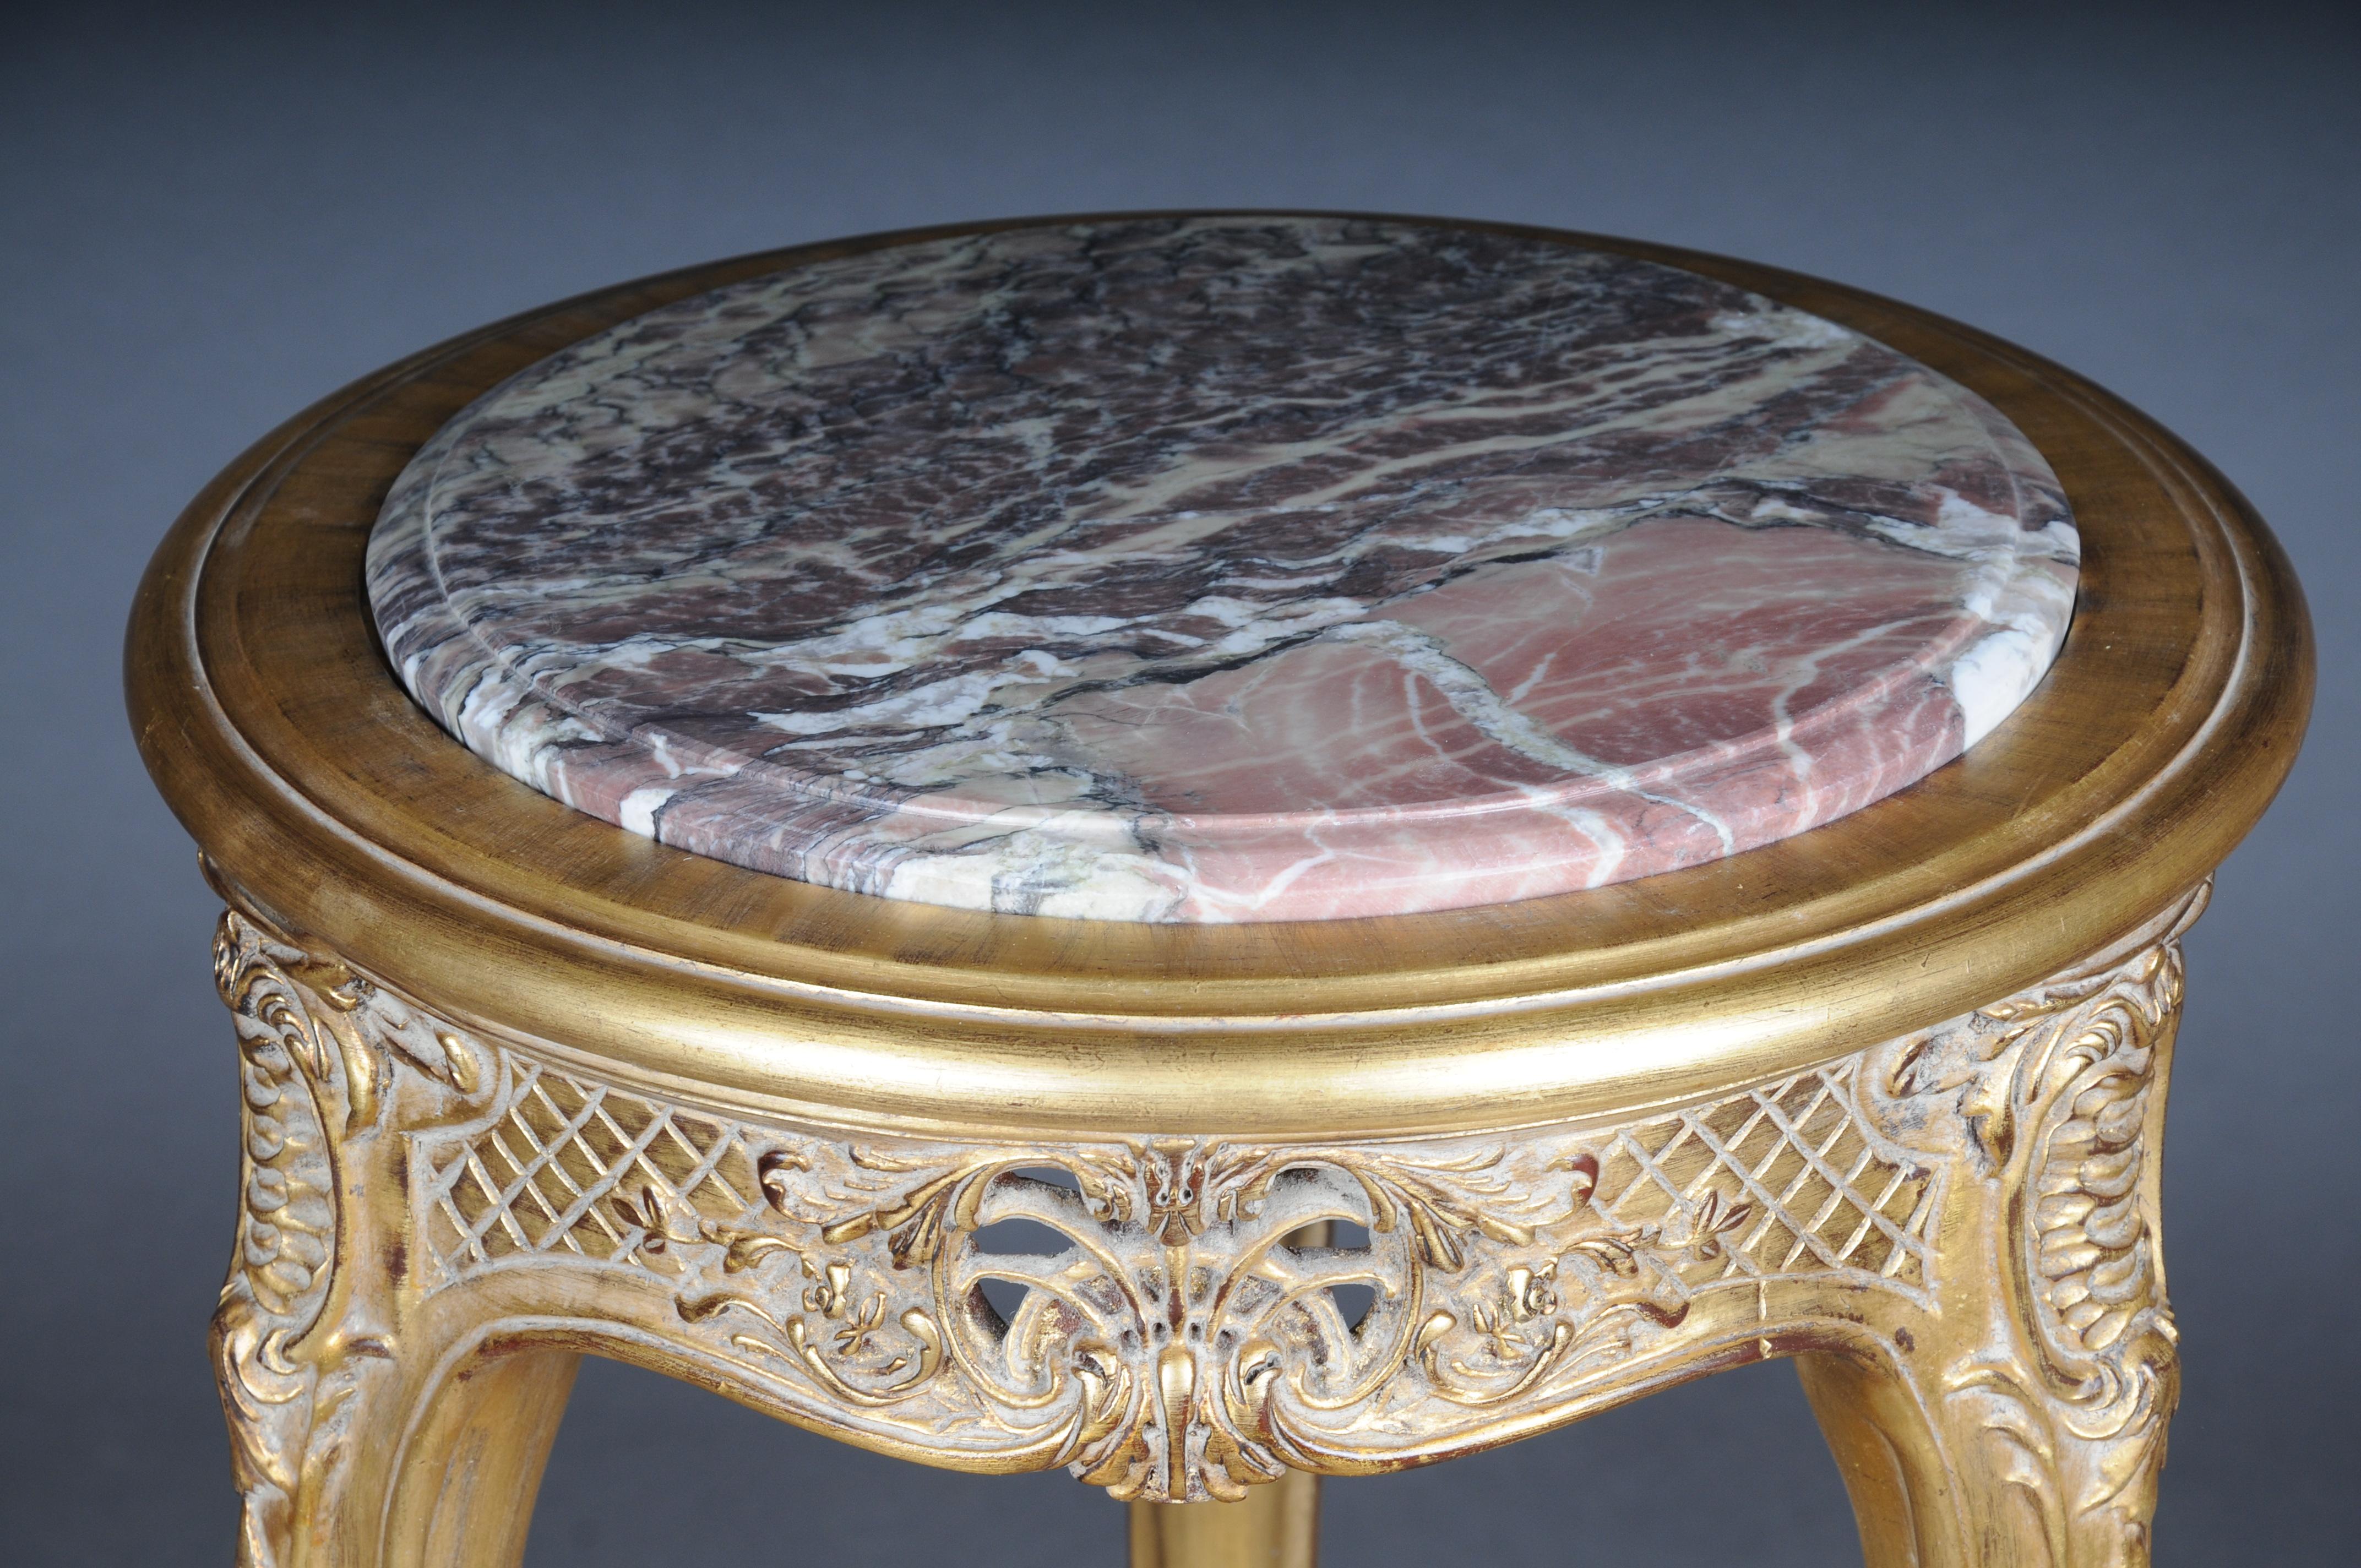 Fein geschnitzter Beistelltisch aus Gold mit Marmorplatte, Louis XV

Ausgezeichneter französischer Tisch im Stil Louis XV.
Hochwertiges, massives Buchenholz, bis ins kleinste Detail geschnitzt. Äußerst dekorativ und edel. Runde, eingelegte und